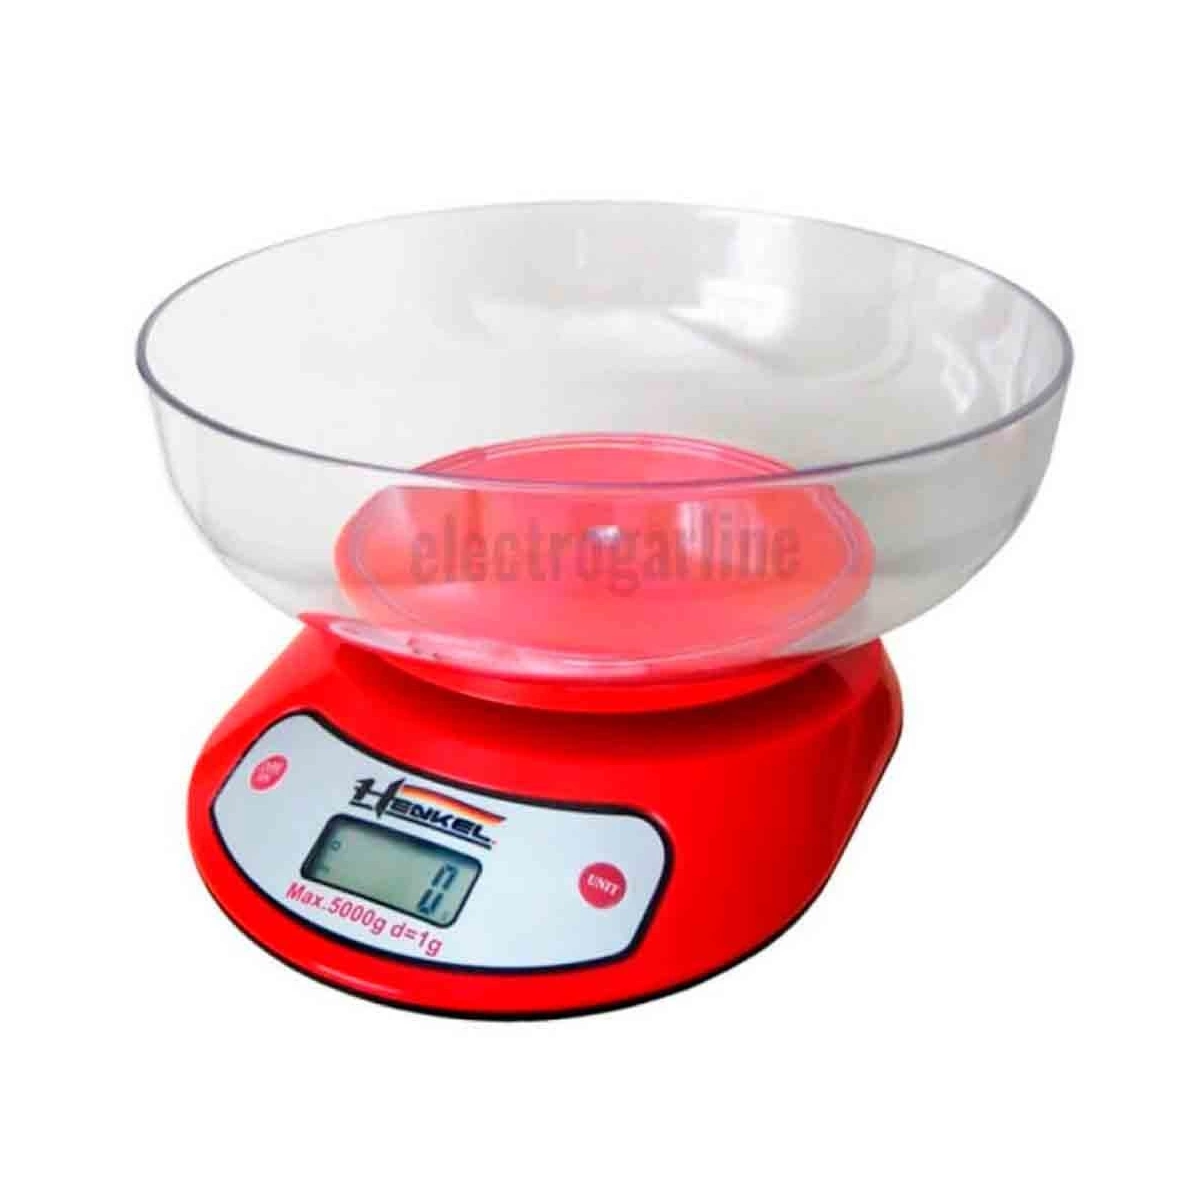 Balanza cocina reposteria digital 1g 5kg henkel